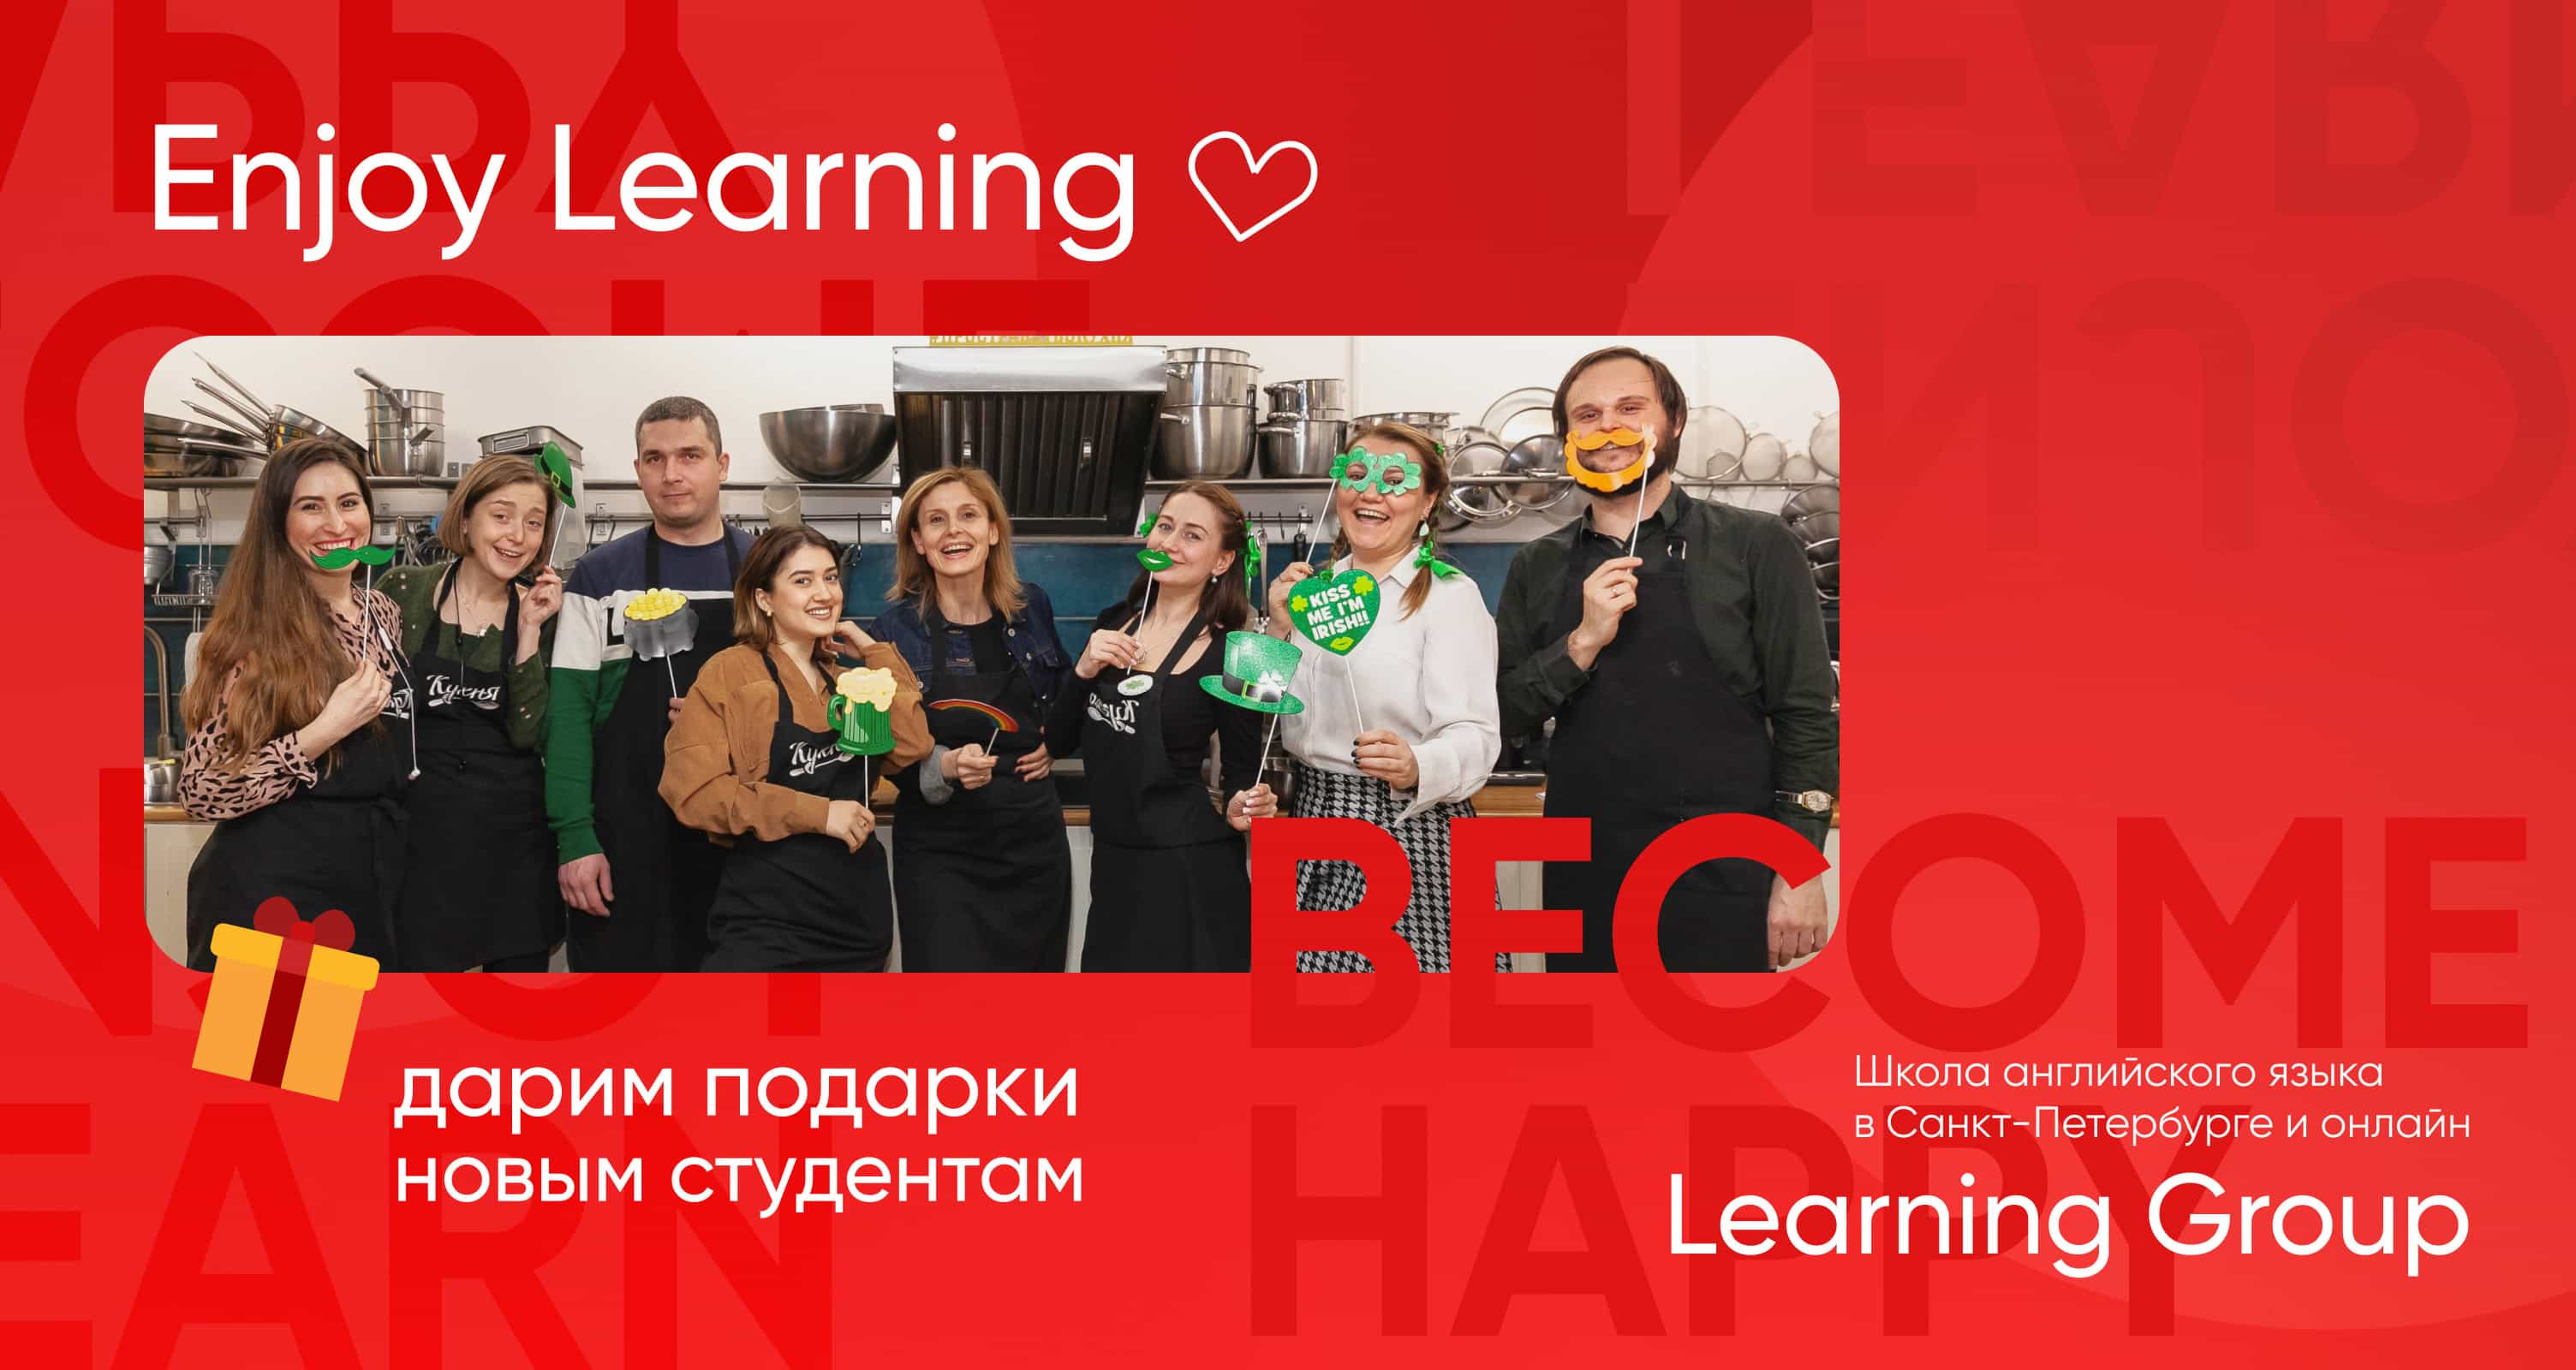 Какие курсы английского с нуля для взрослых предлагают в Санкт-Петербурге?